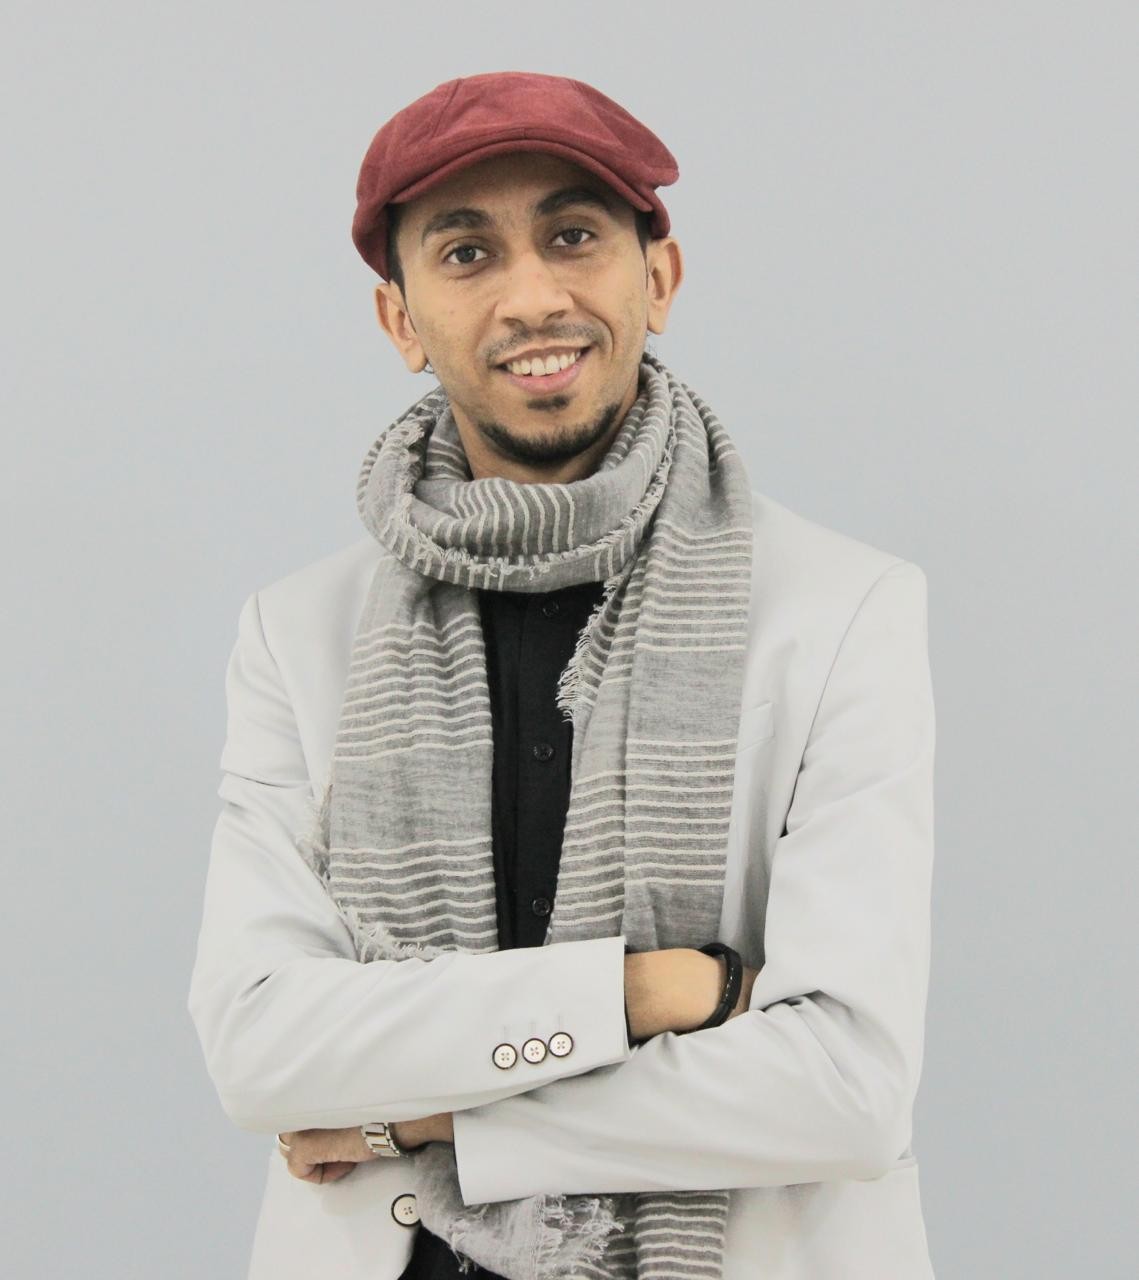 الفنان السعودي أمين الحباره ينال الجائزة الشرفية في مهرجان بورتو الدولي في البرتغال